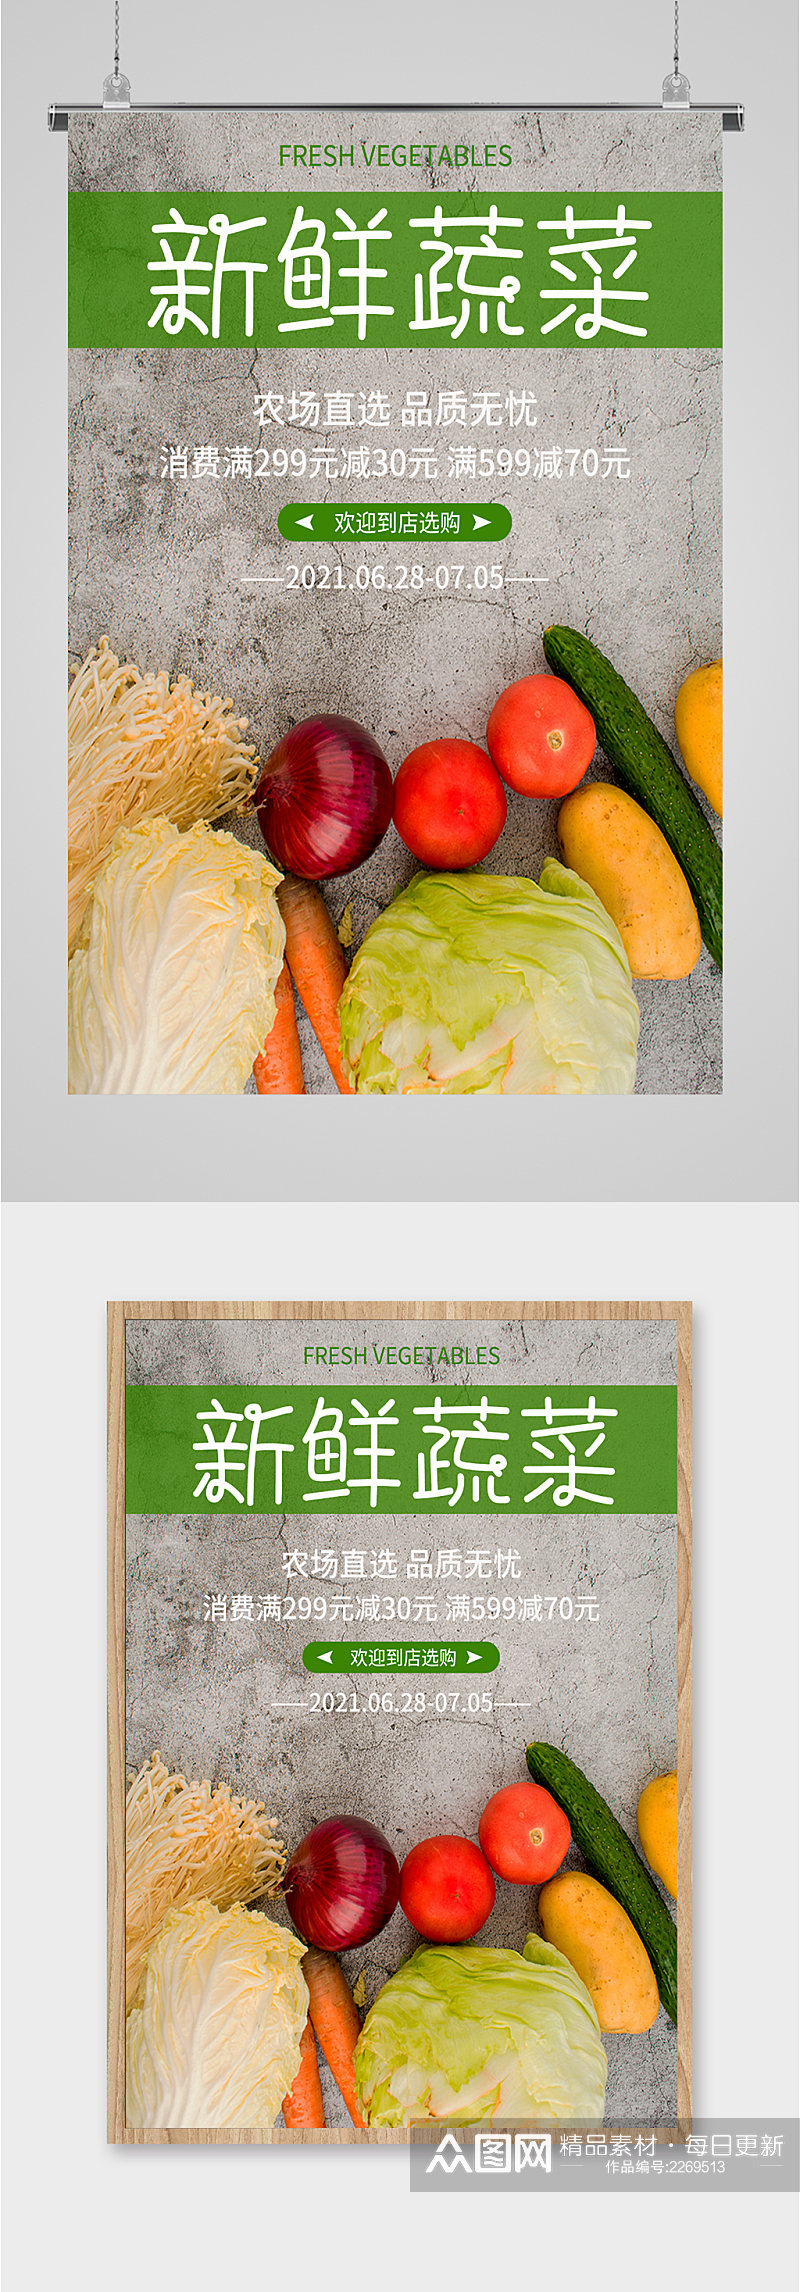 新鲜蔬菜水果海报素材